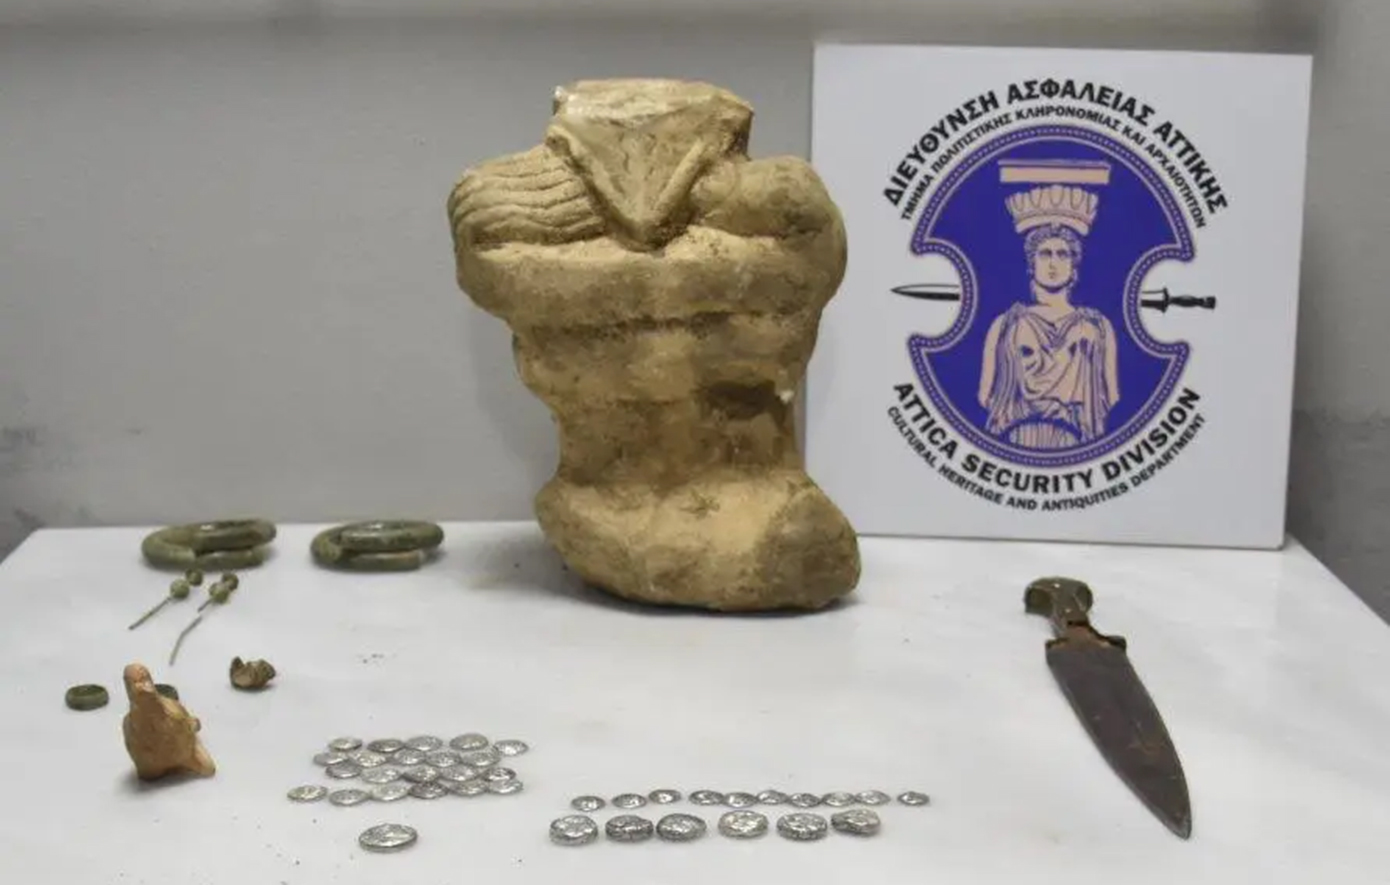 Προσπάθησαν να πουλήσουν αρχαία νομίσματα  ανυπολόγιστης αξίας και αντικειμένων στην Εύβοια